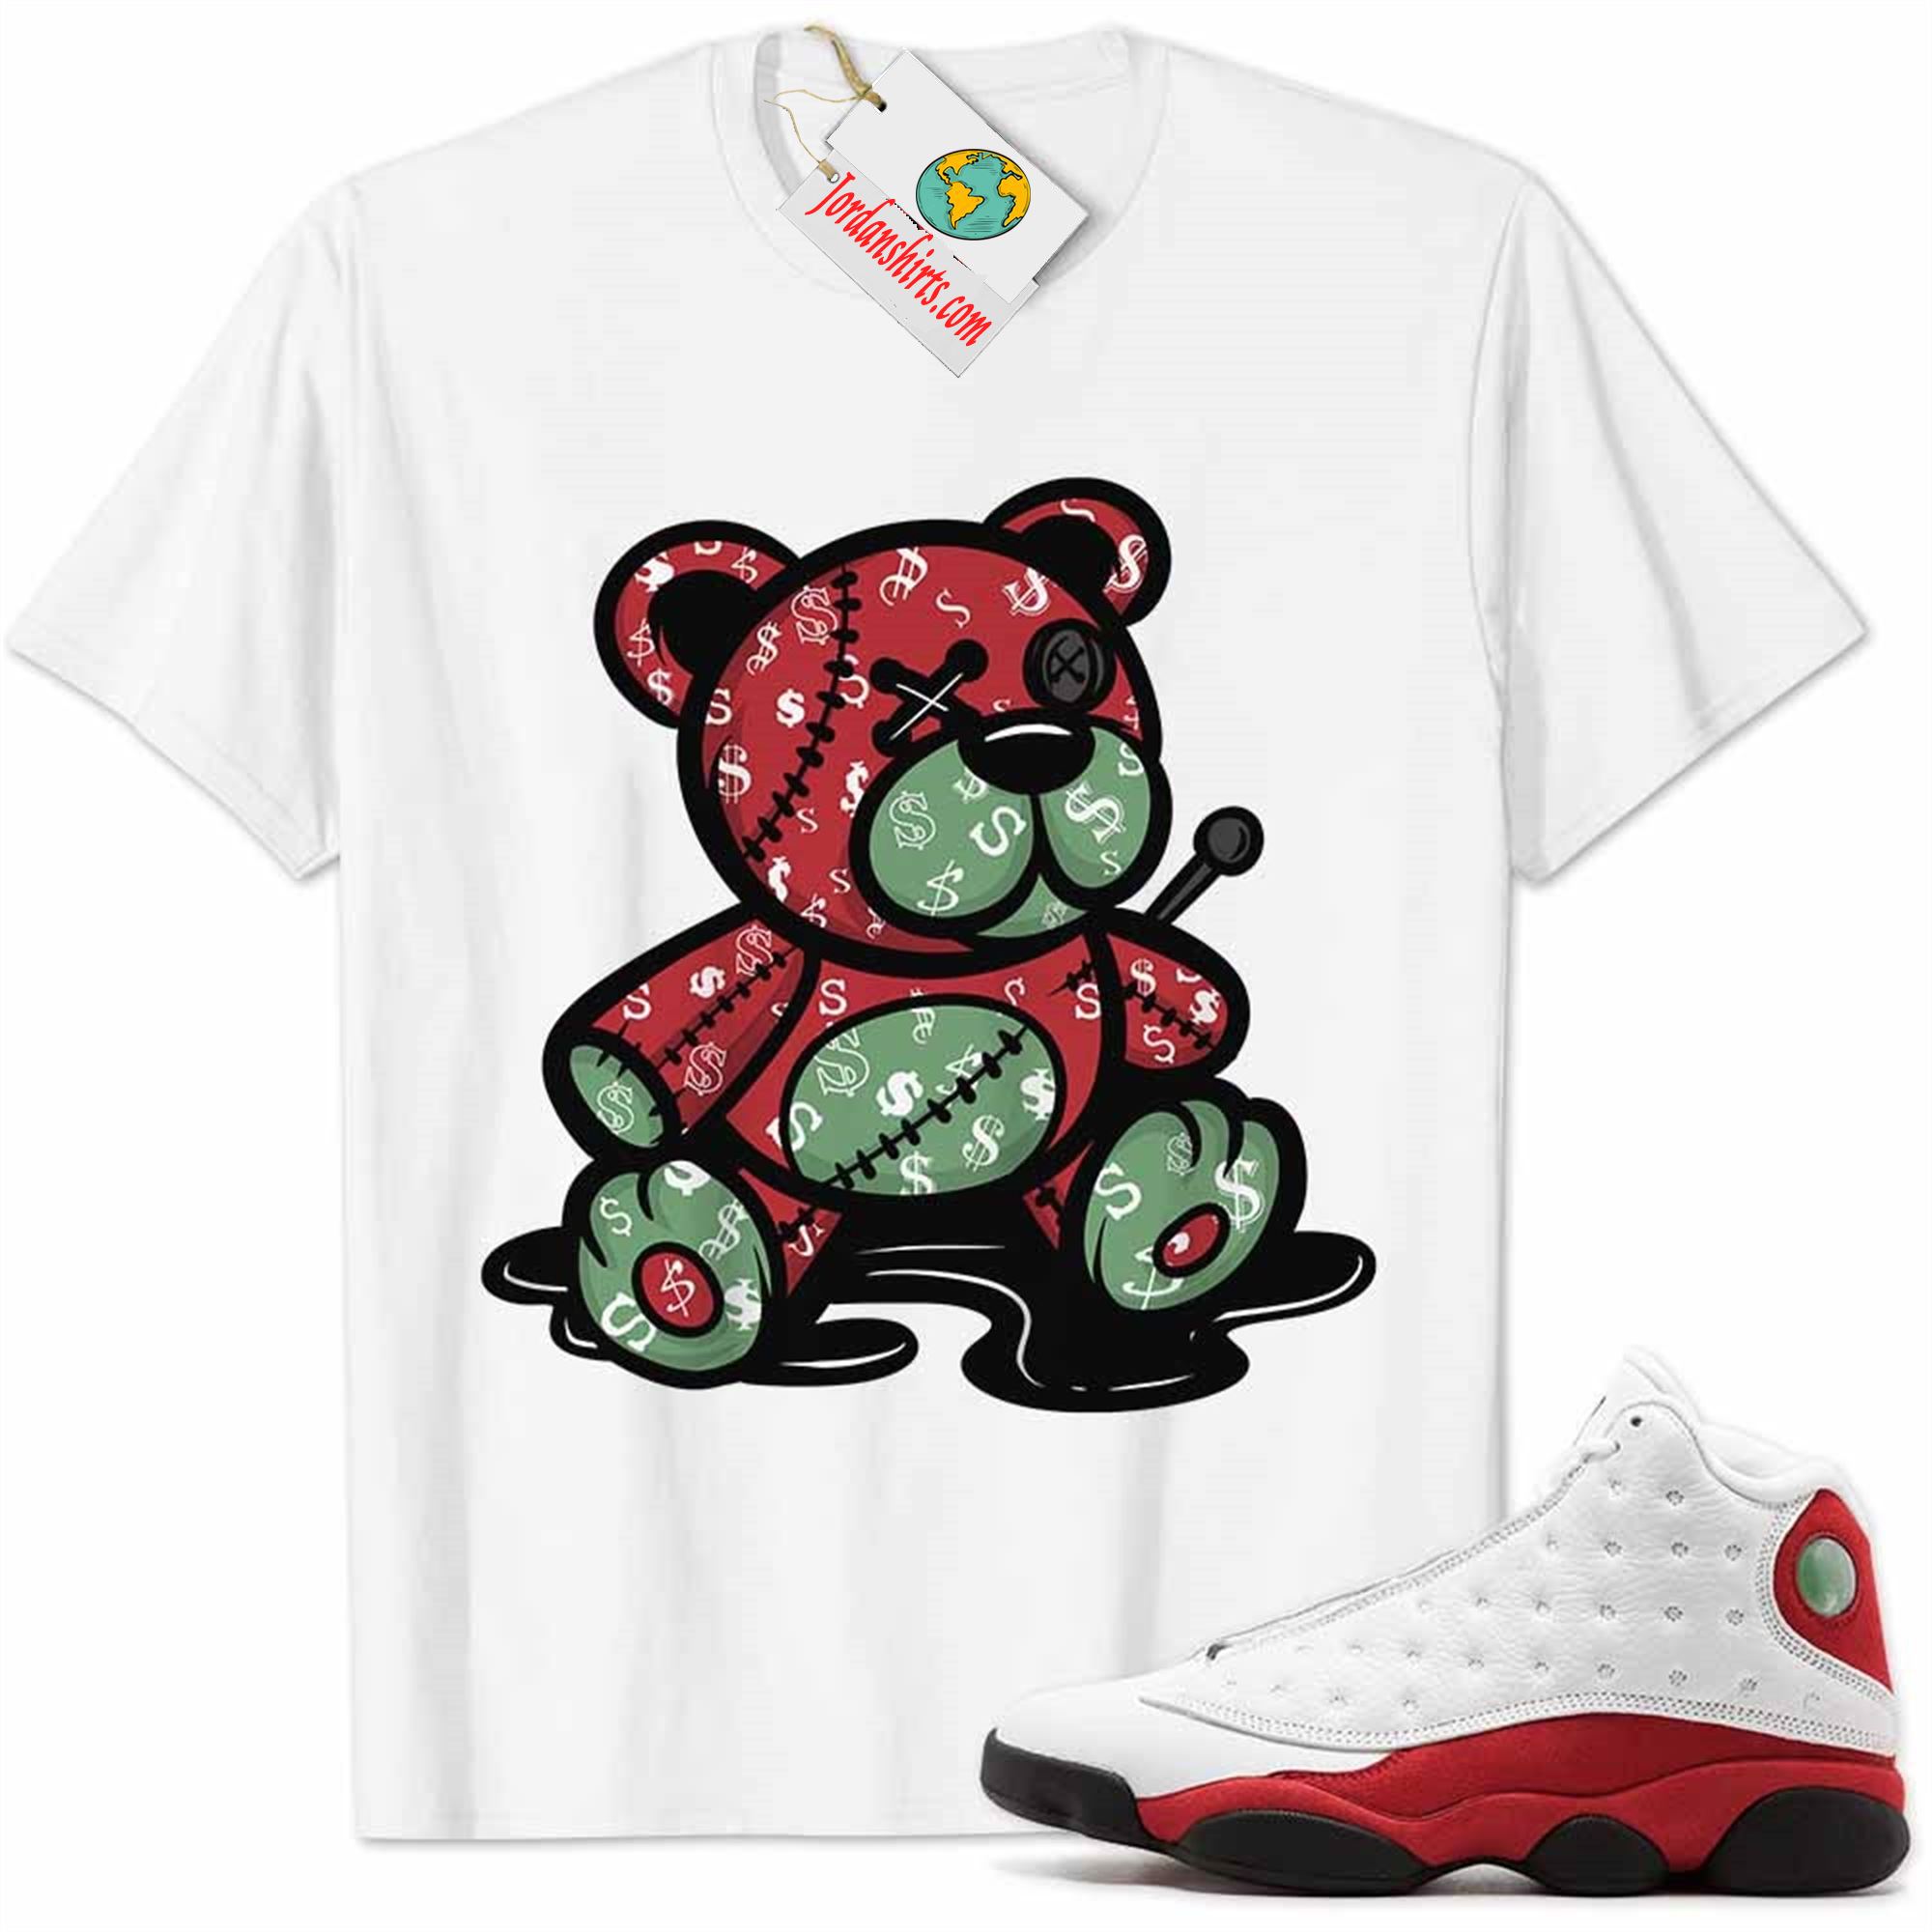 Jordan 13 Shirt, Jordan 13 Chicago Shirt Teddy Bear All Money In White Full Size Up To 5xl